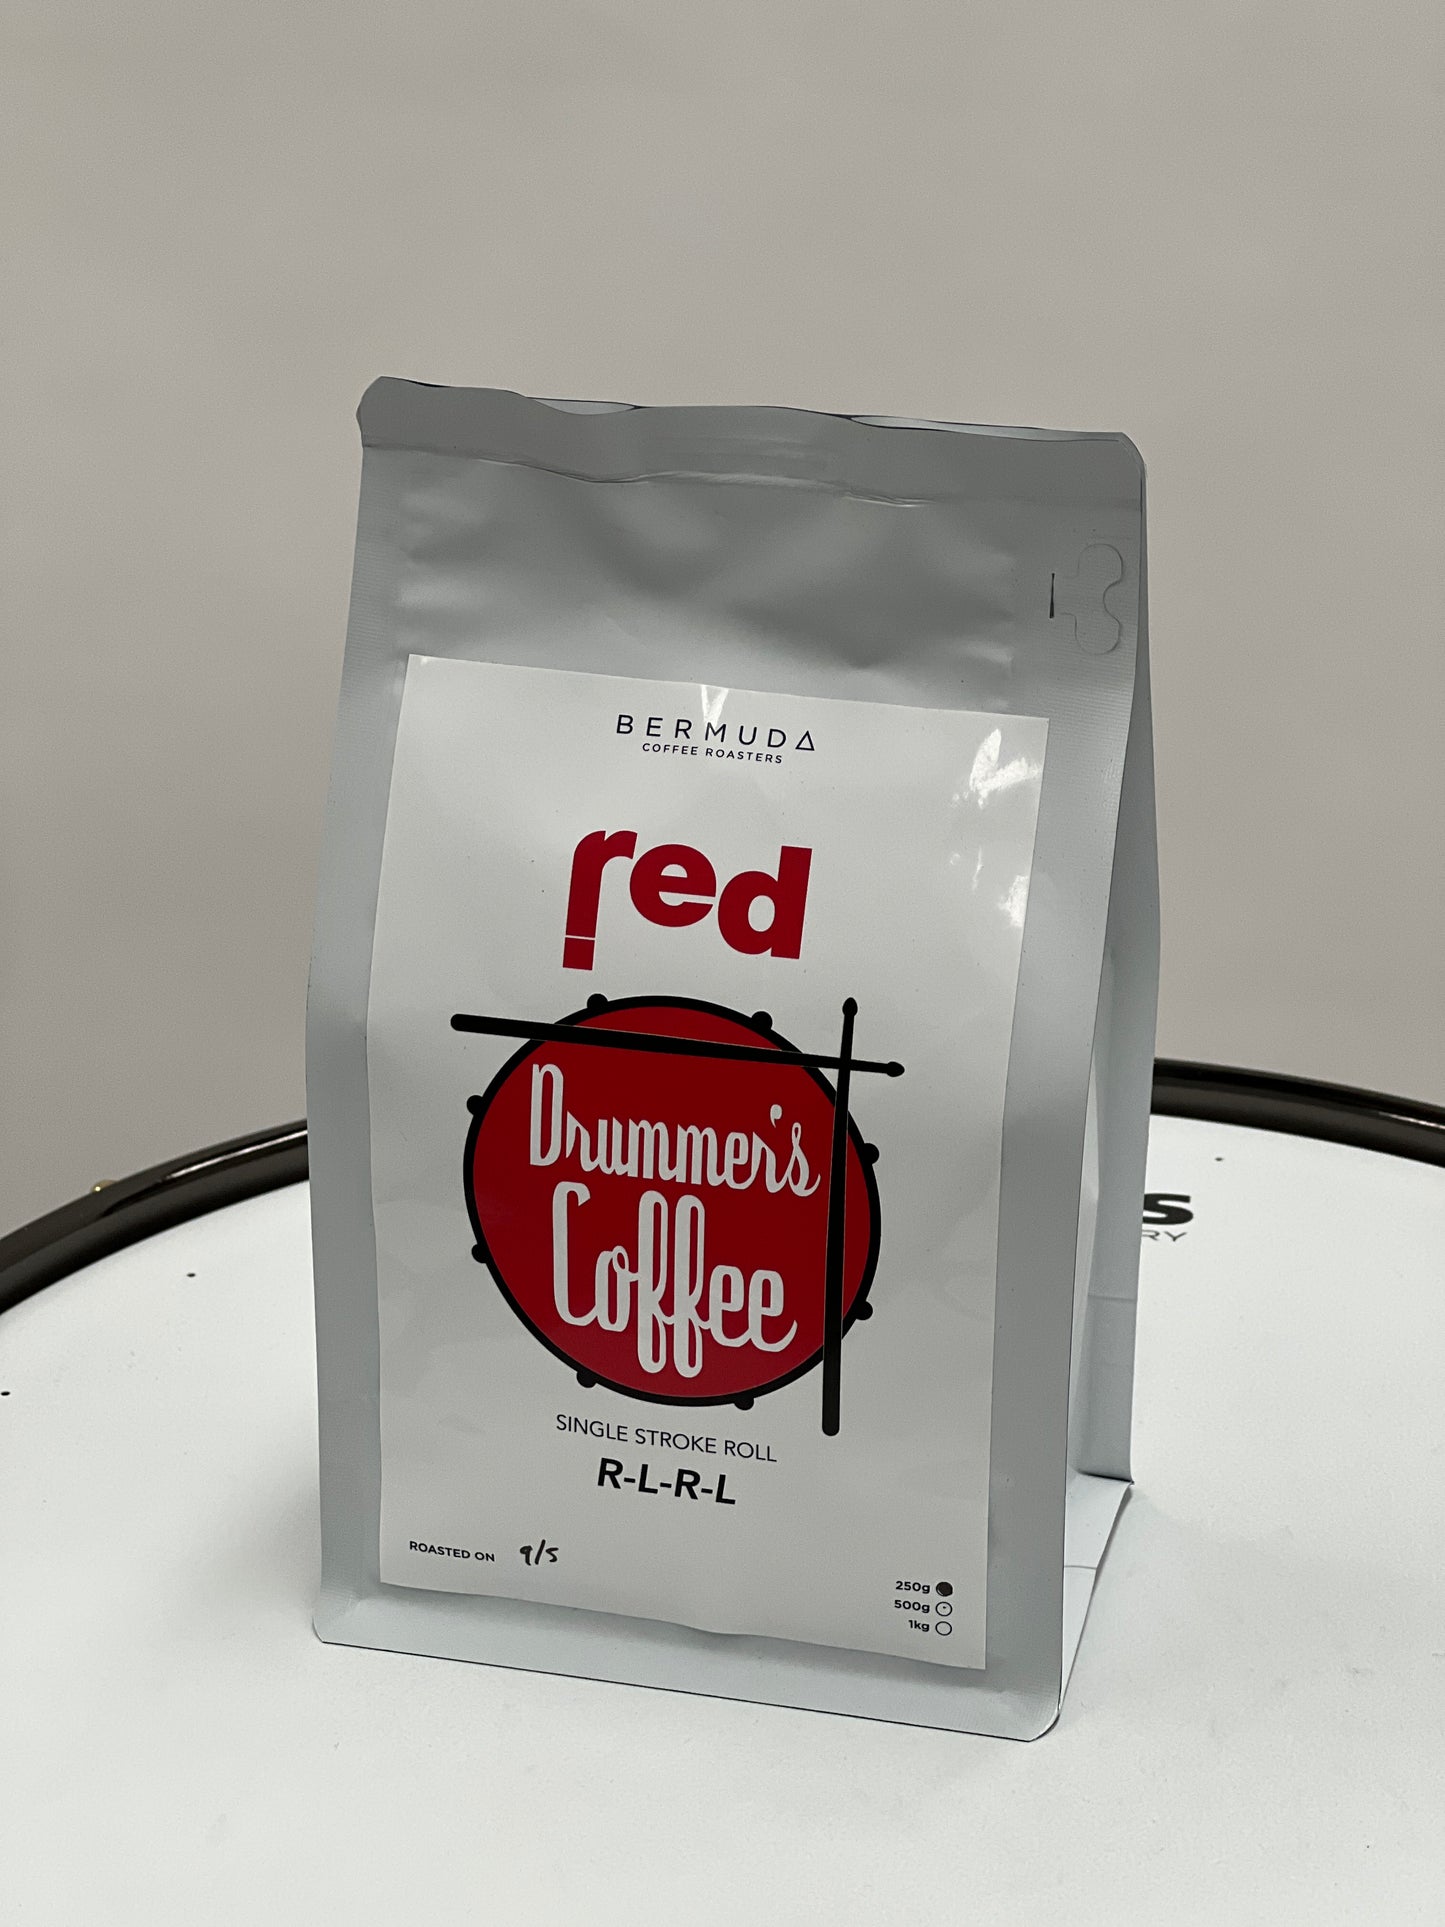 Red Cymbals - Drummer's Coffee (Beans) - Single Stroke Roll - Brazilian Single Origin